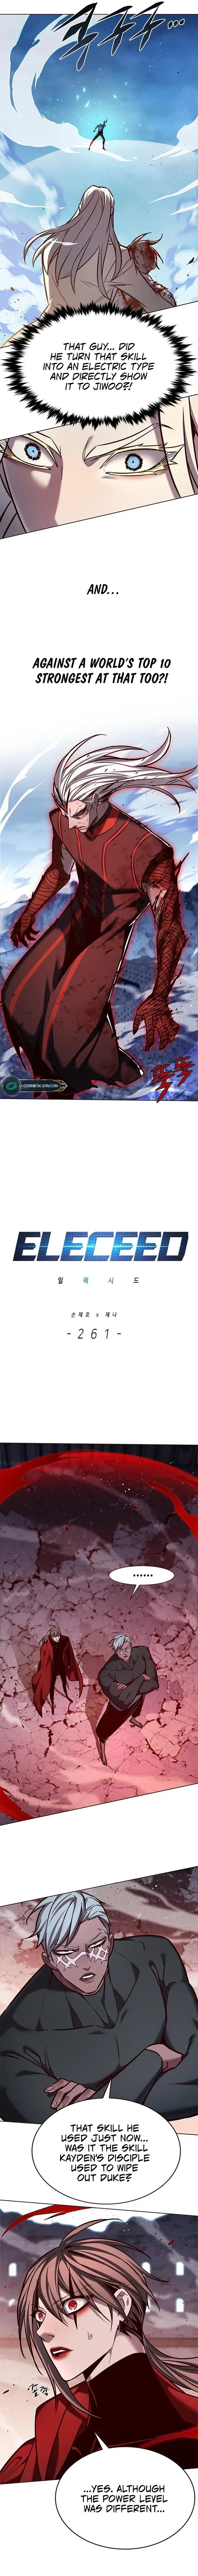 eleceed_261_3